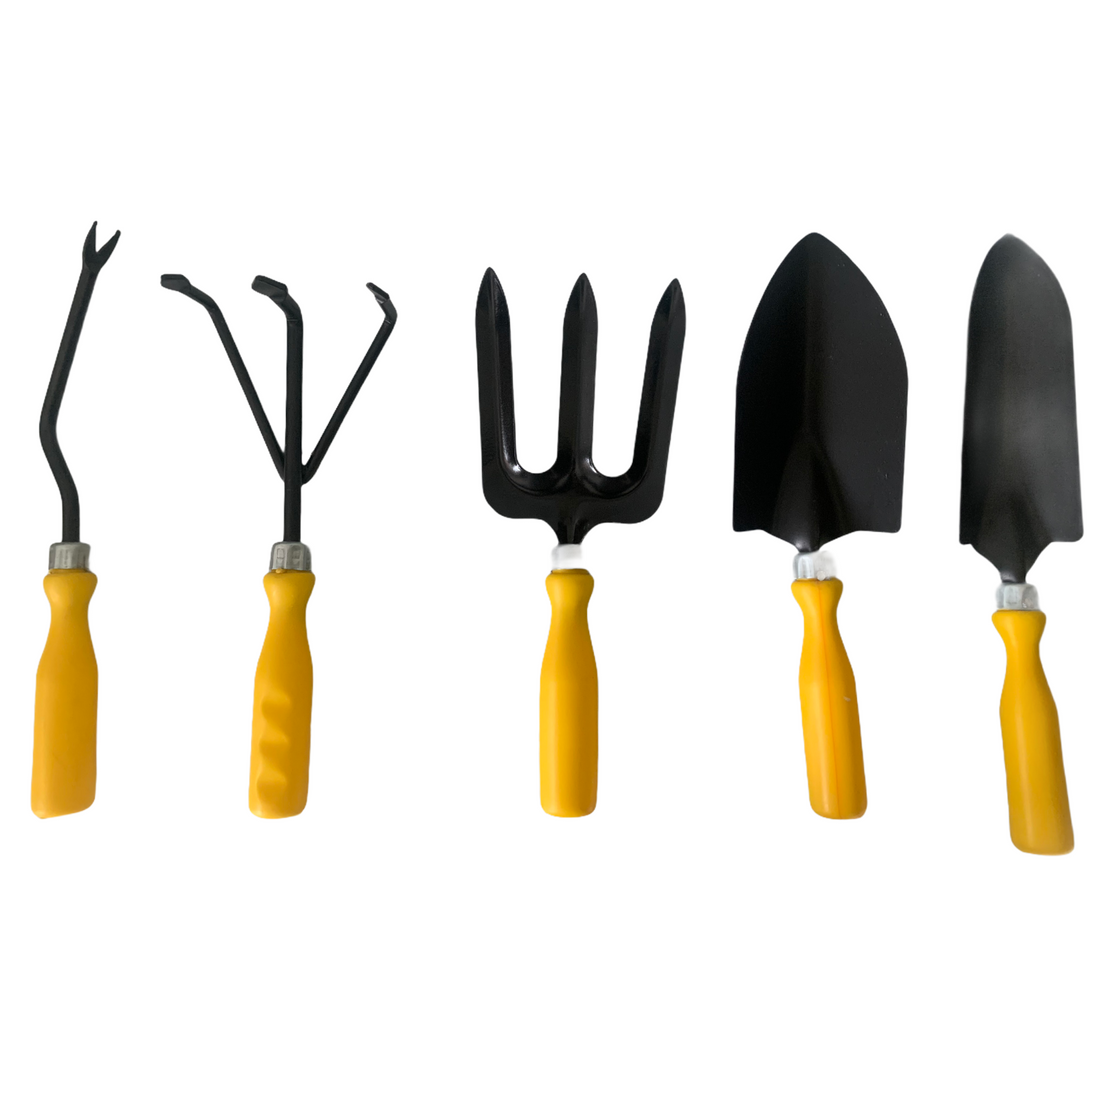 Gardening Tools - Set of 5